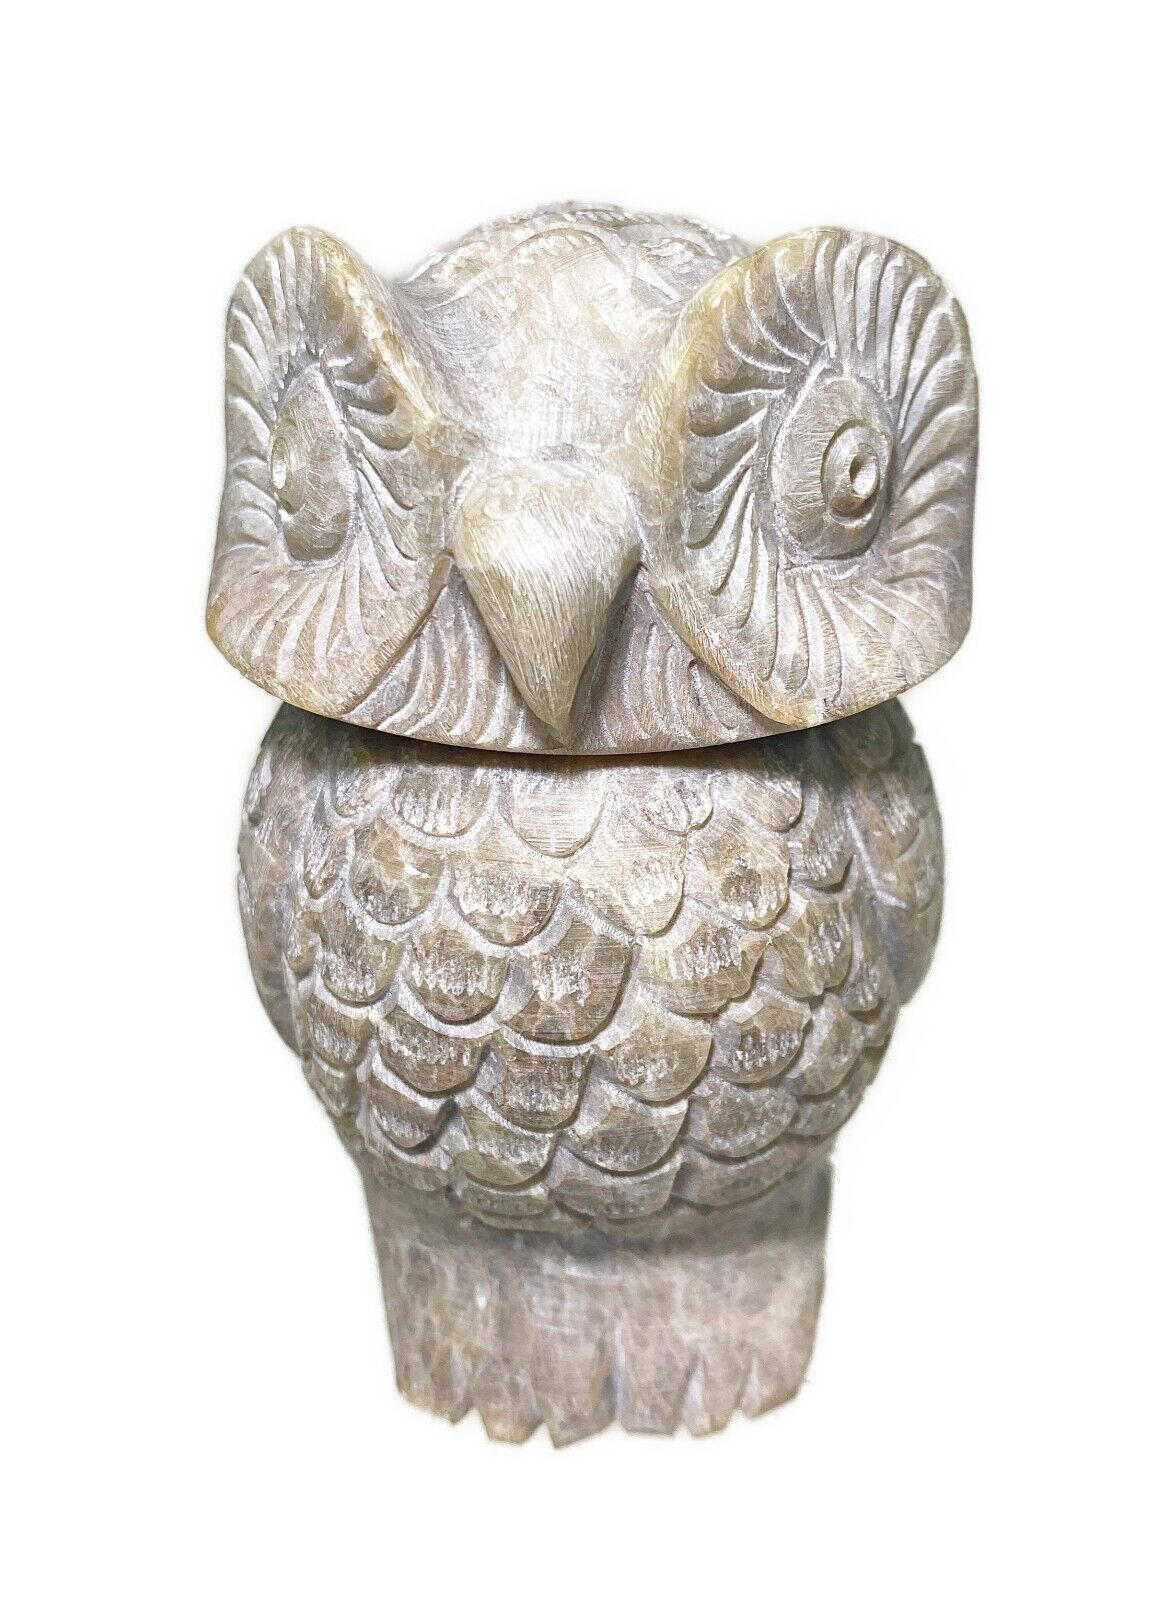 3.5” Carved Stone Owl Trinket Box Stash 2 Piece Figurine Big Eyes Hoot